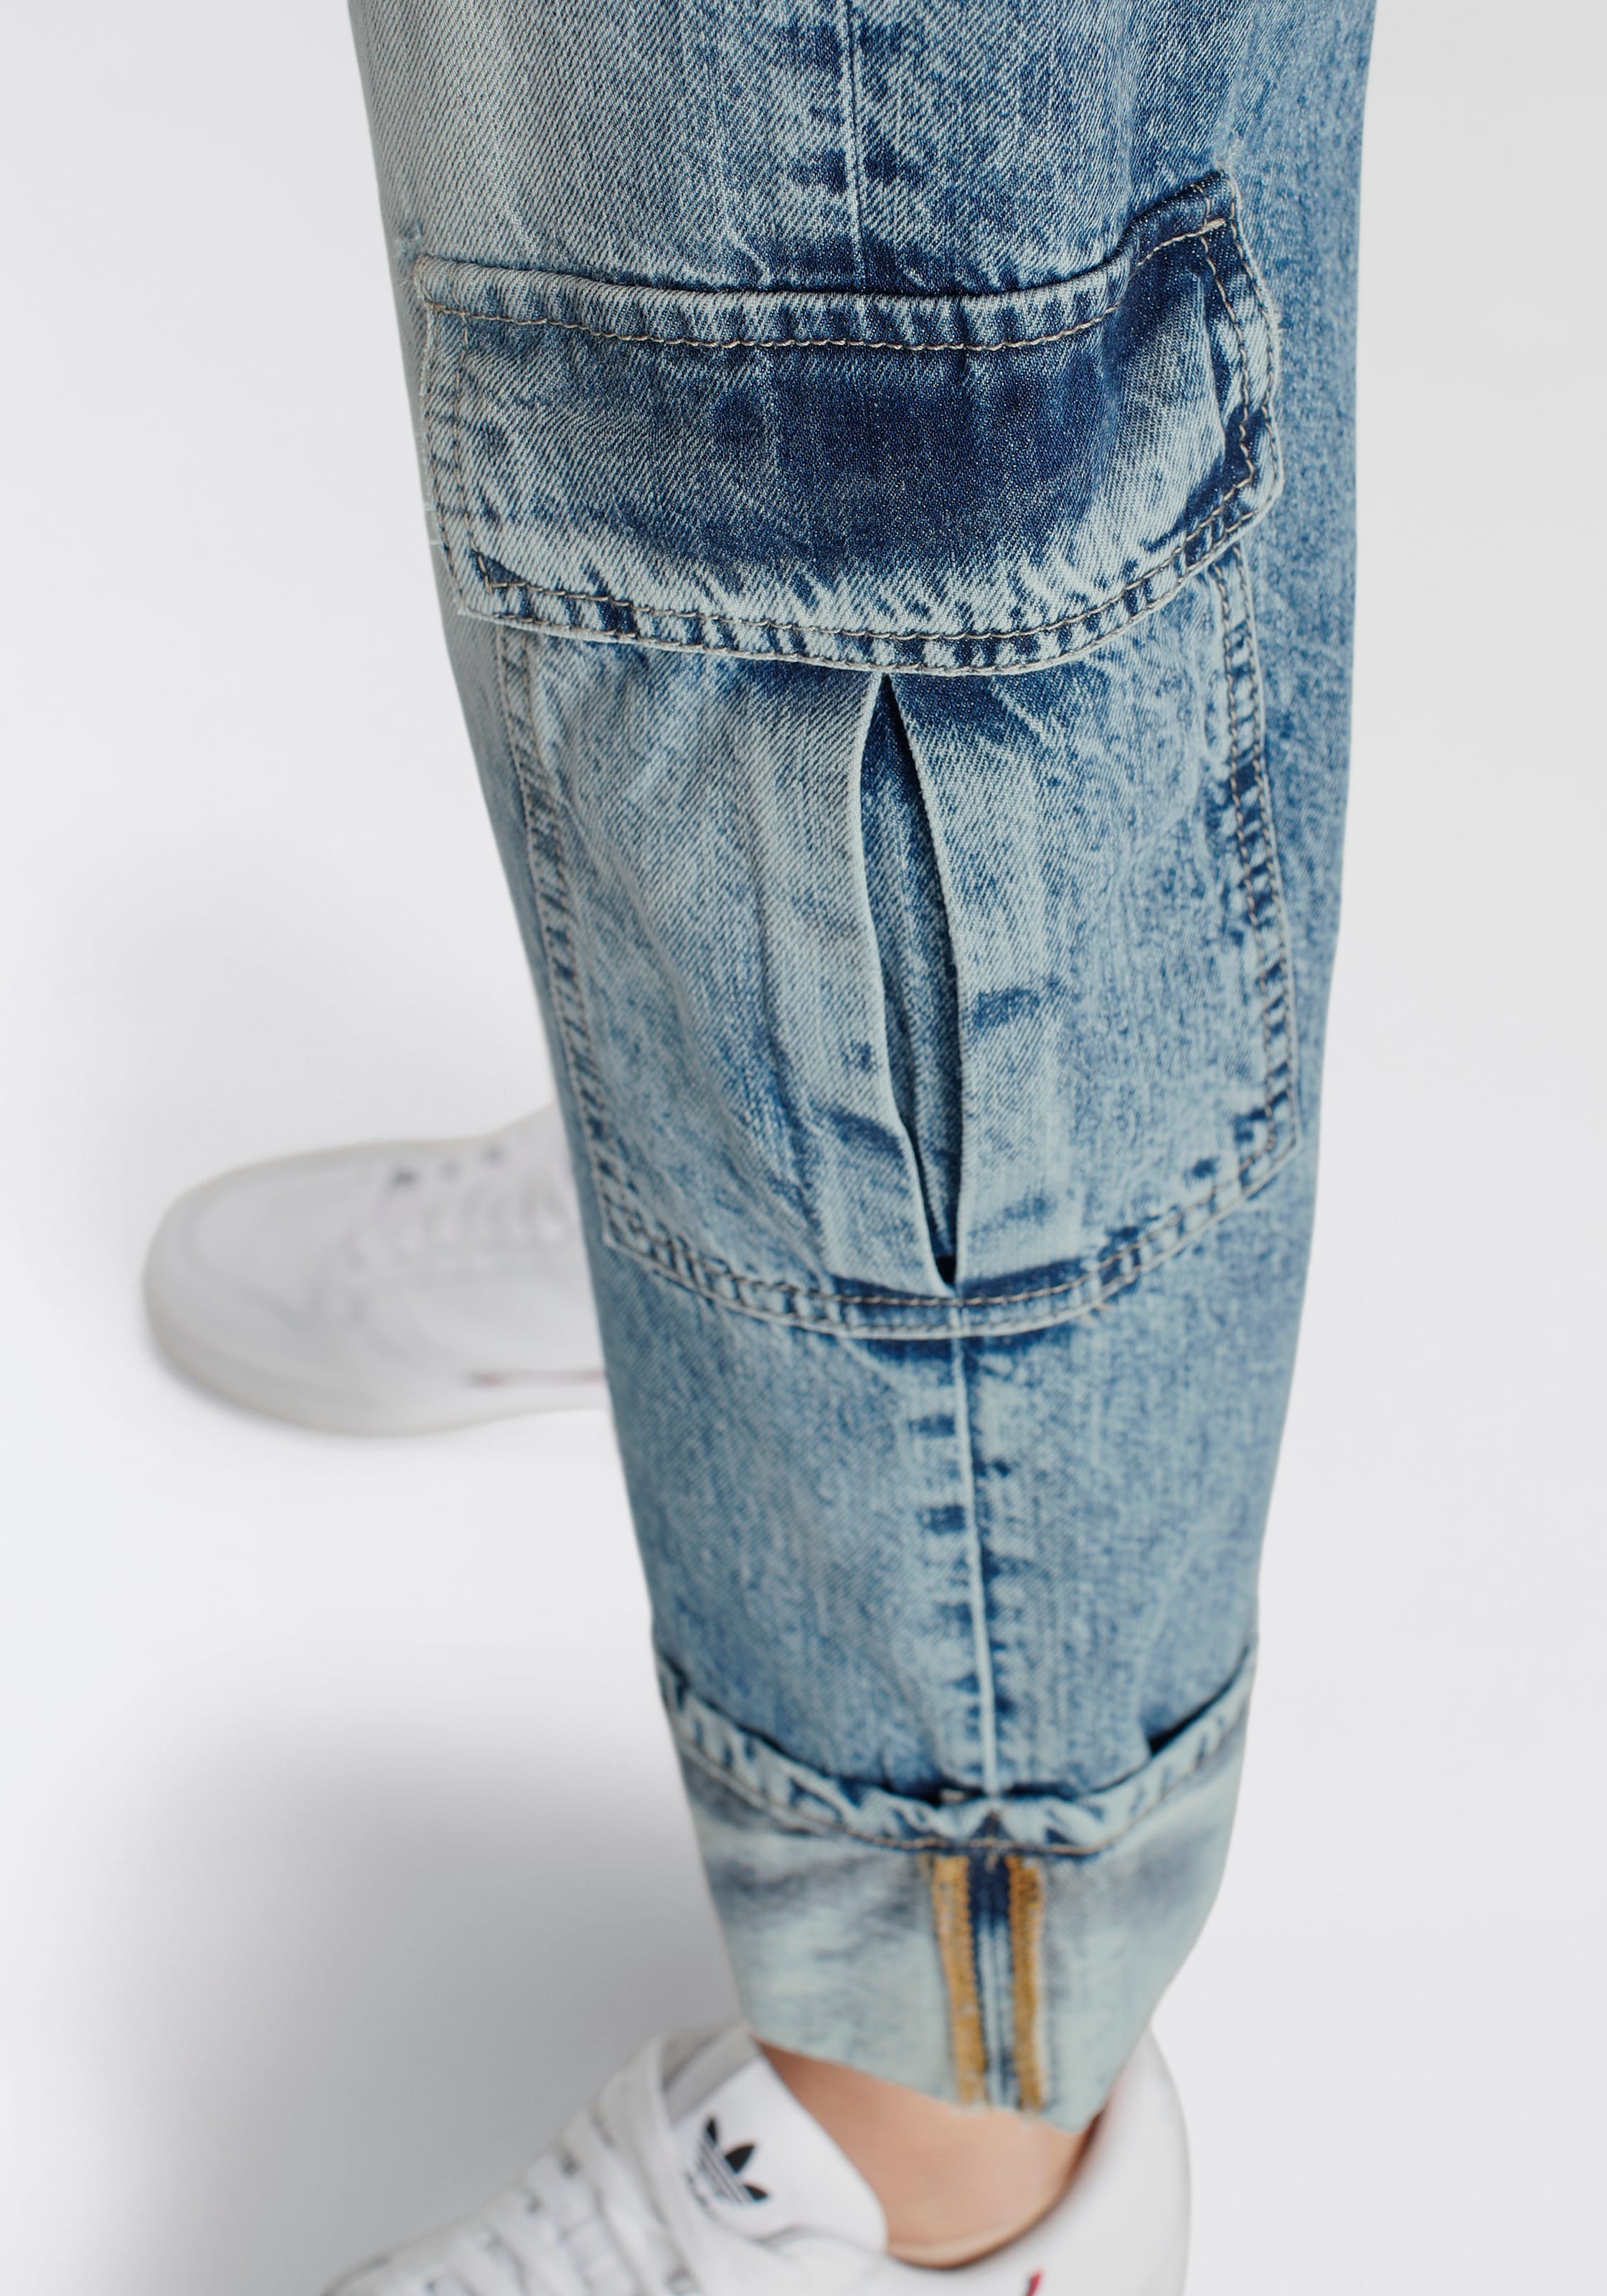 Please Jeans Boyfriend-Hose für kaufen | BAUR